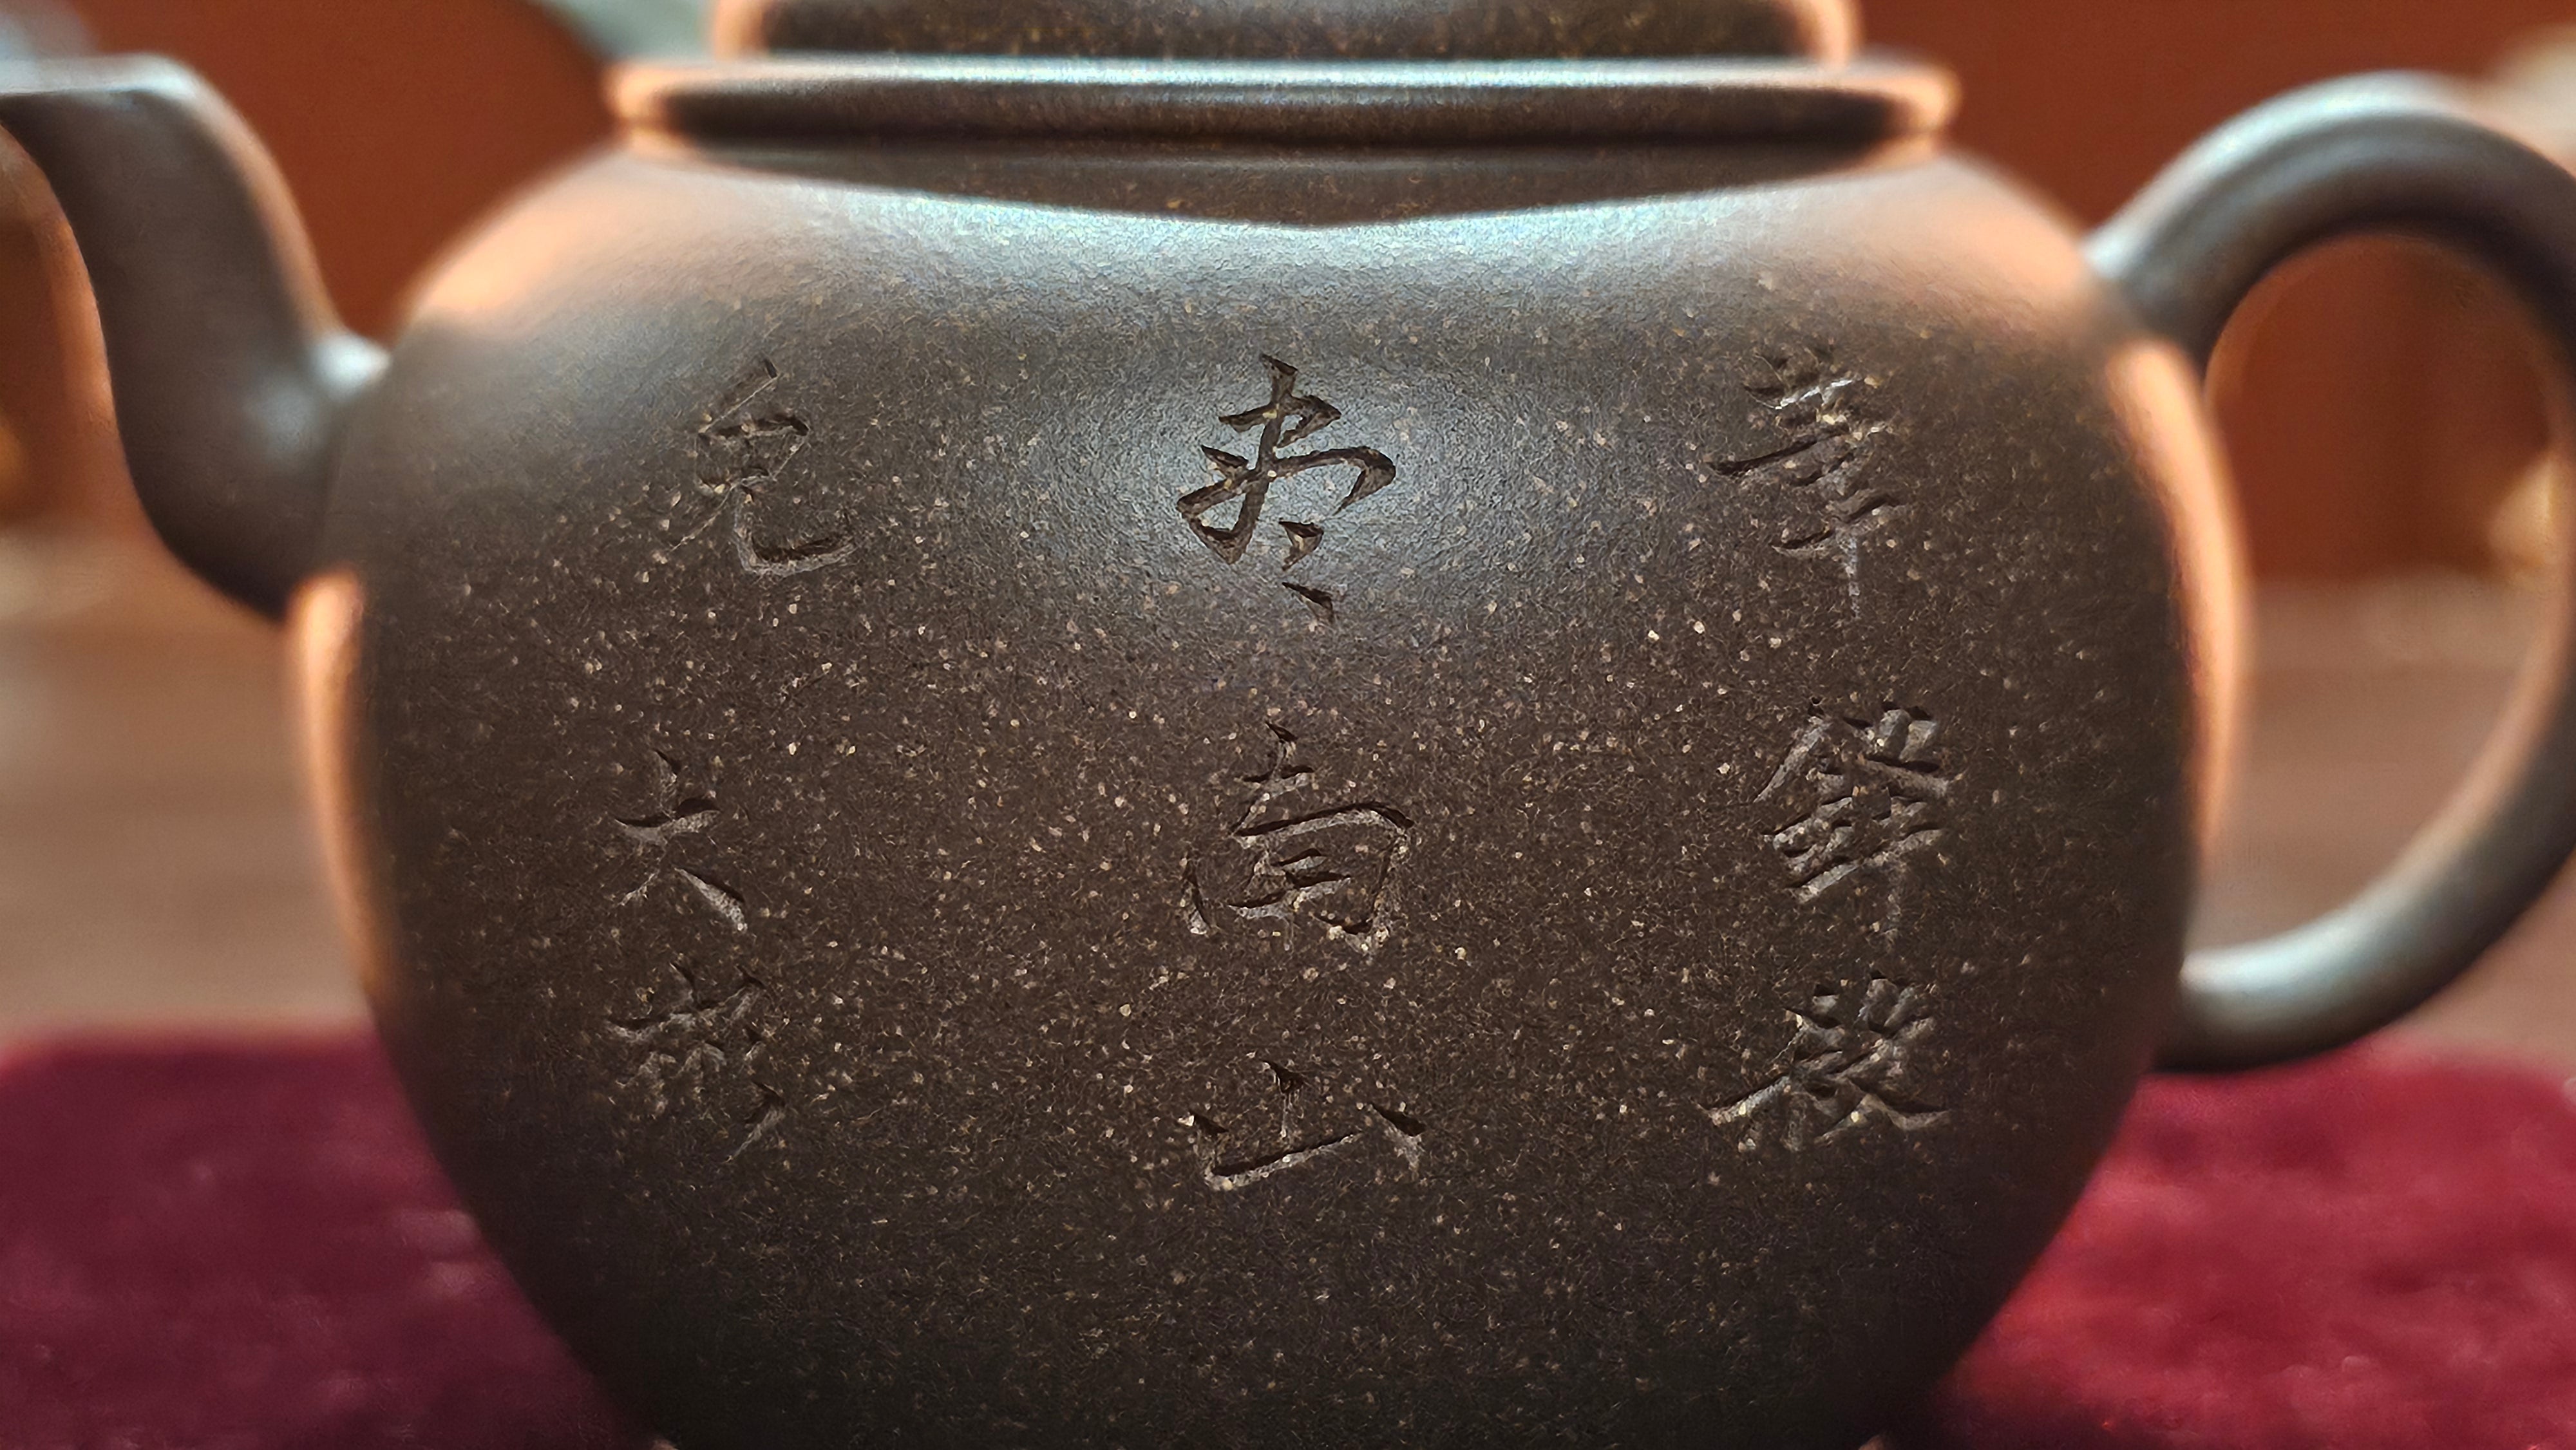 Da Bin Gong Deng 大彬宫灯, 205ml, Gu Fa Lian Ni (Most Archaic Clay Forming) ~ Di Cao Qing with Duan Ni (Tiao Sha combination) *古法练泥~底槽青+段泥(调砂), L4 Assoc Master Du Cheng Yao 堵程尧。